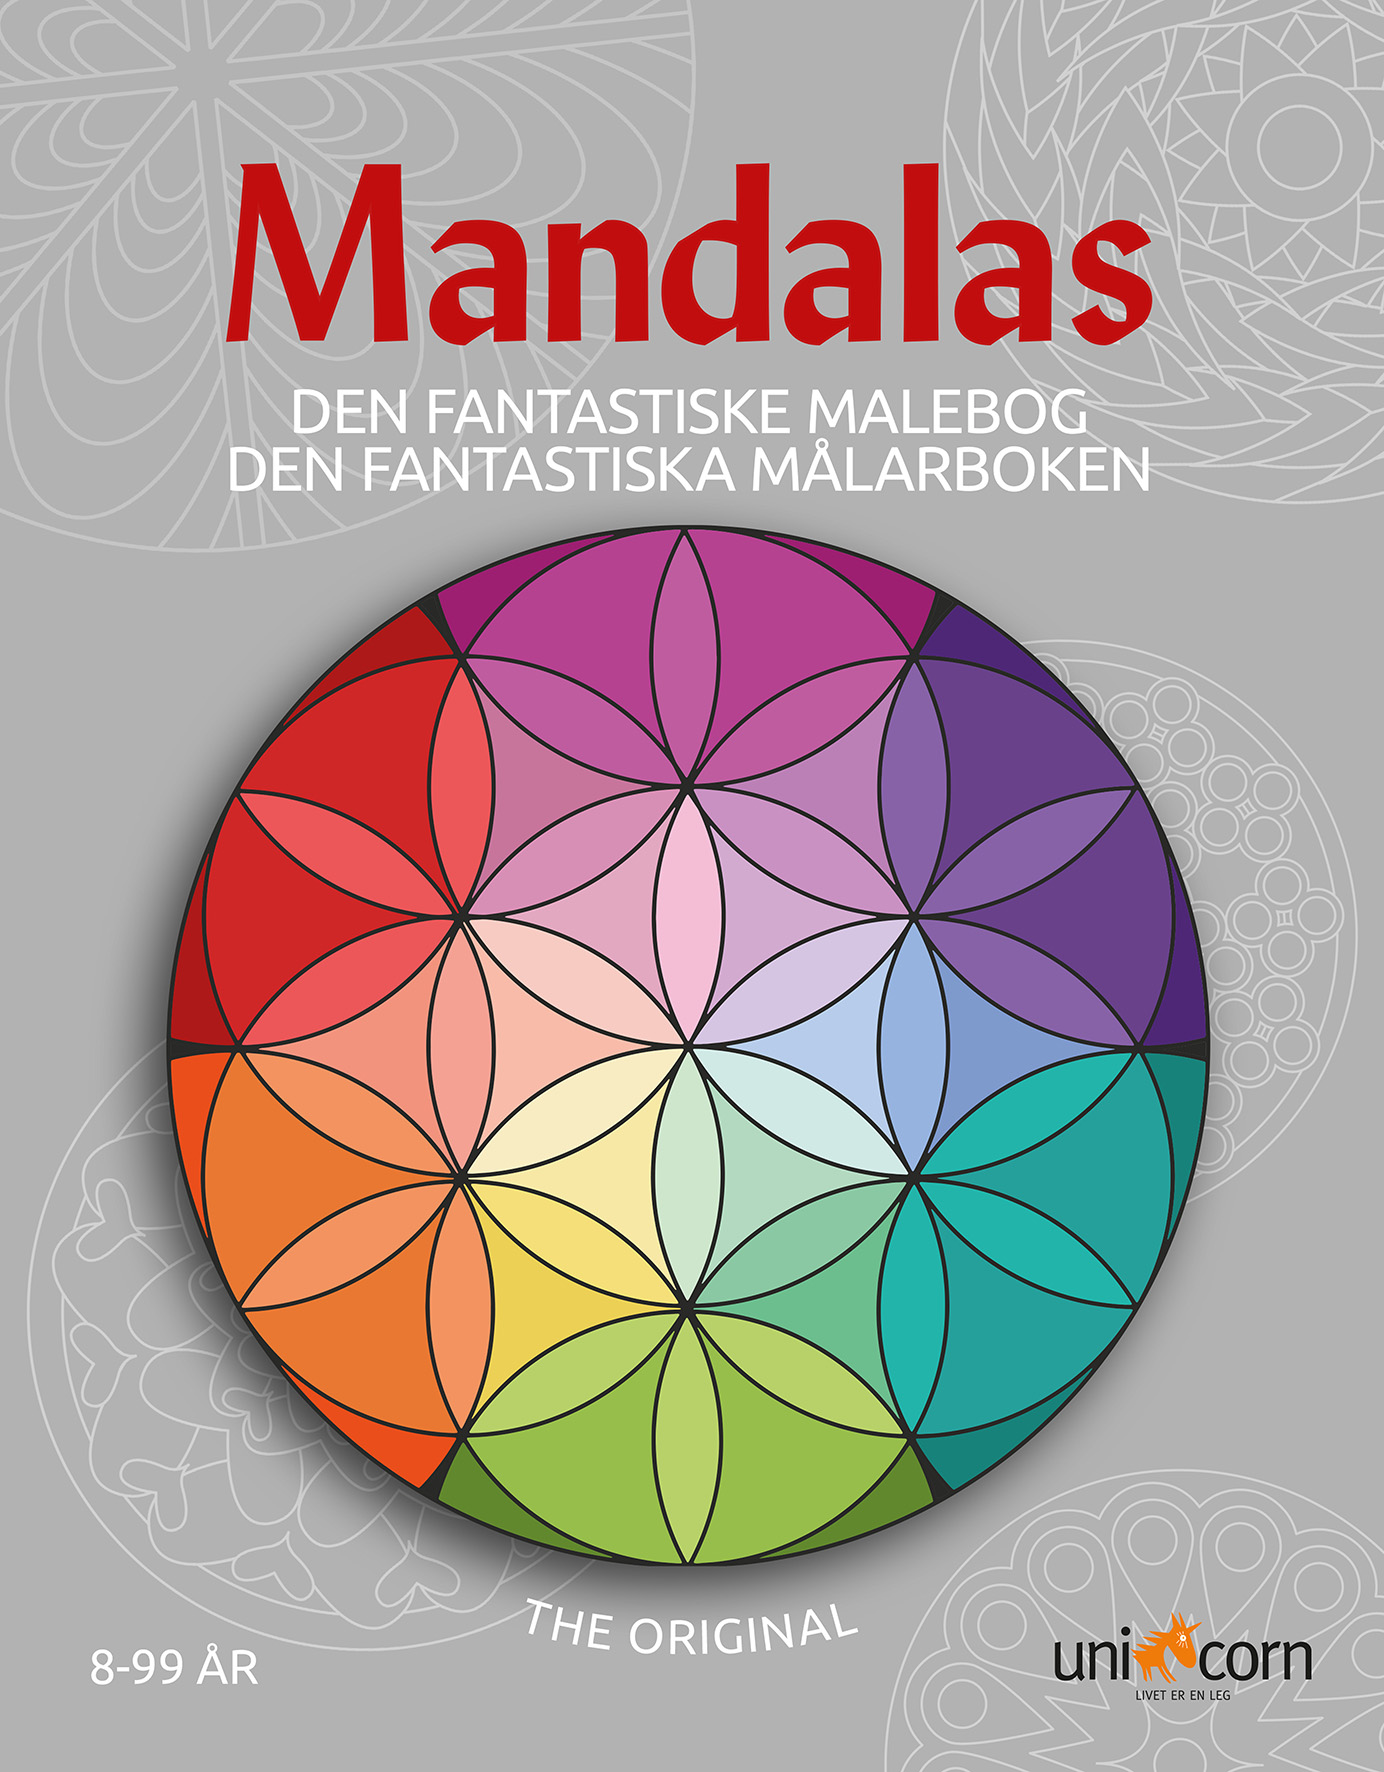 [8100424] Målarbok Mandalas från 8 år